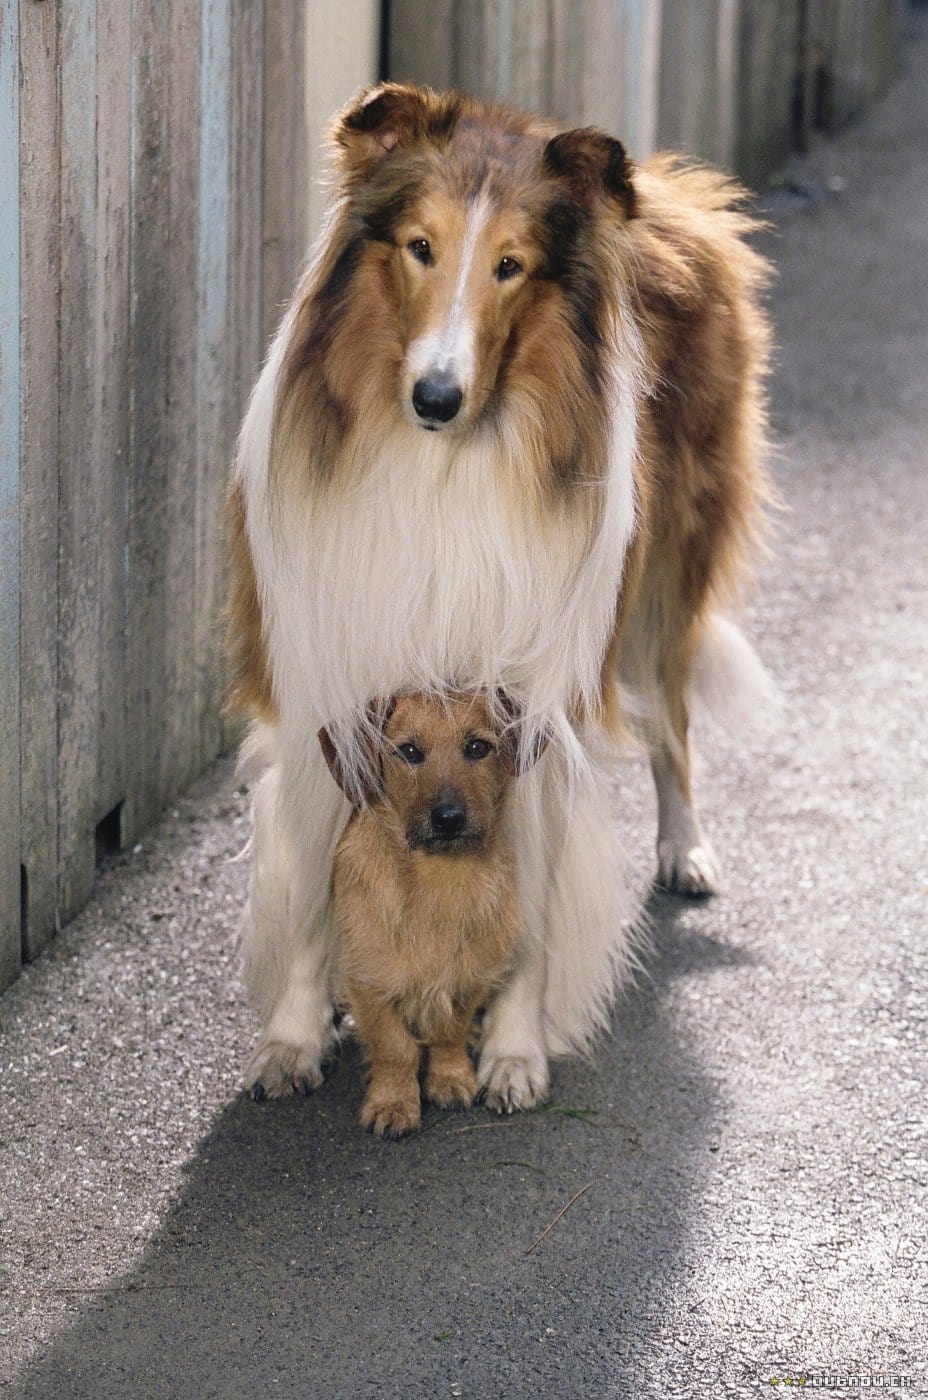 Picture Of Lassie